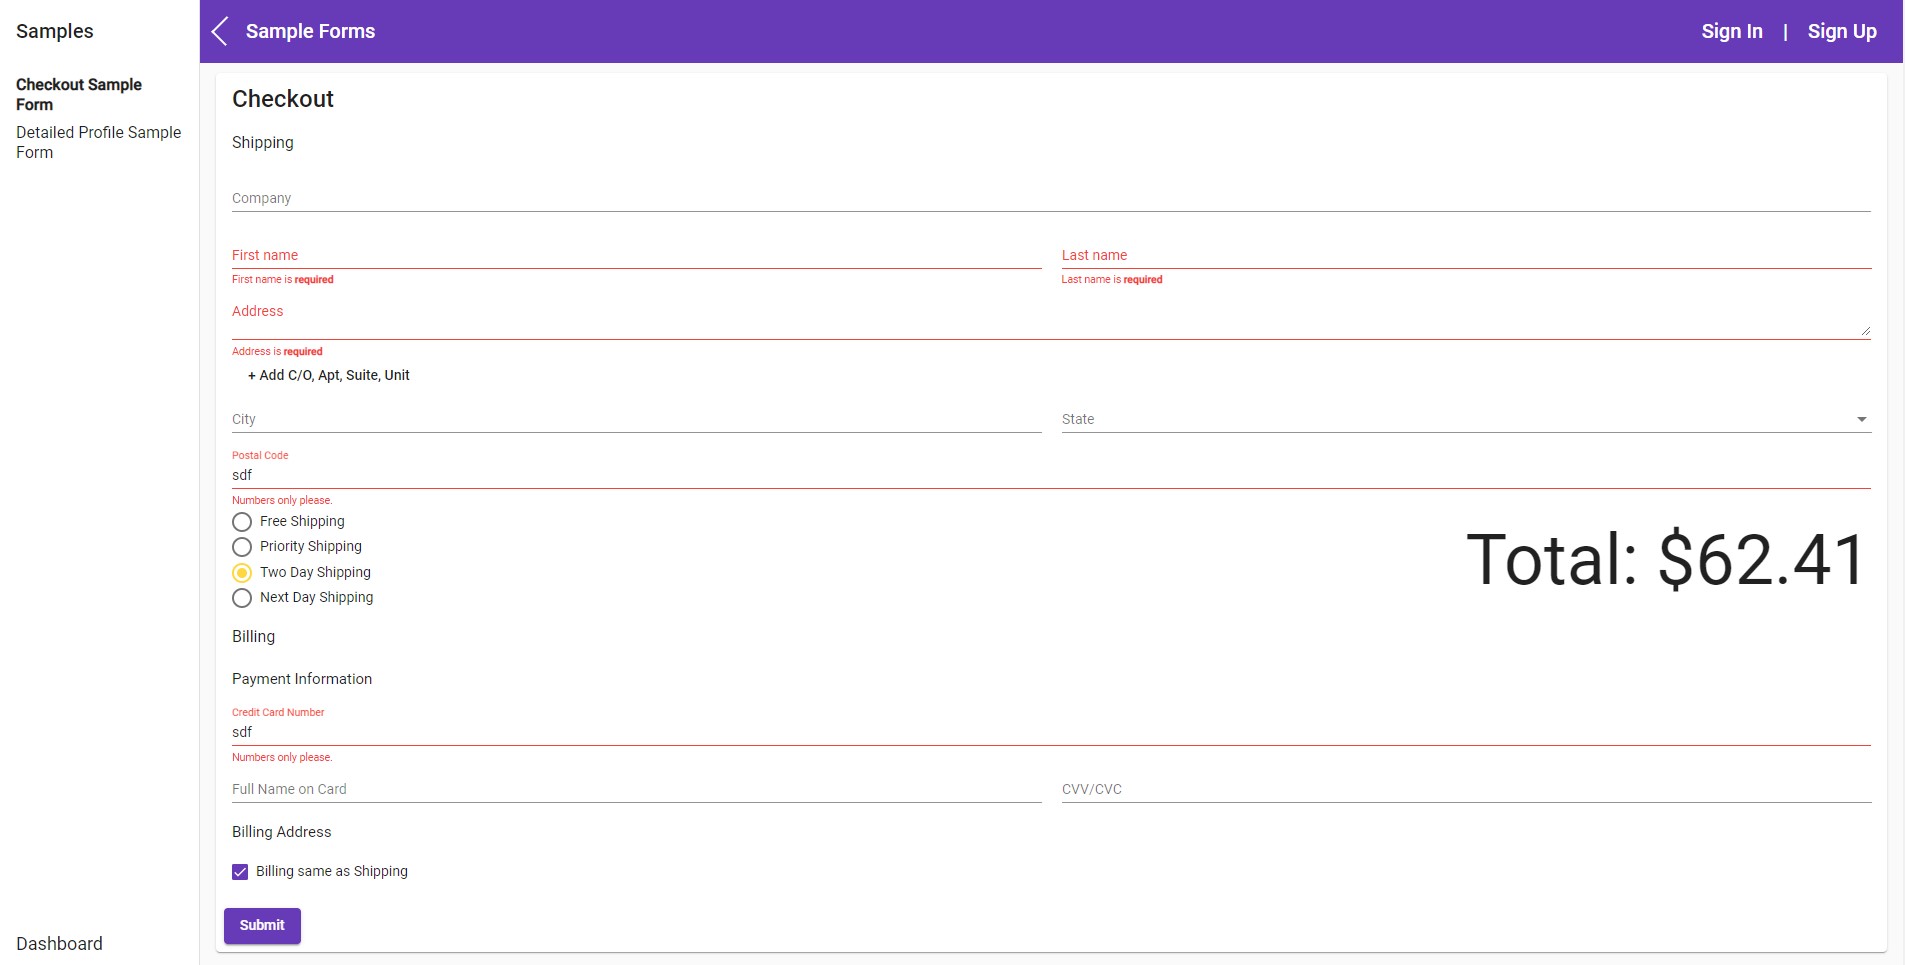 Screenshot of Sample Forms App